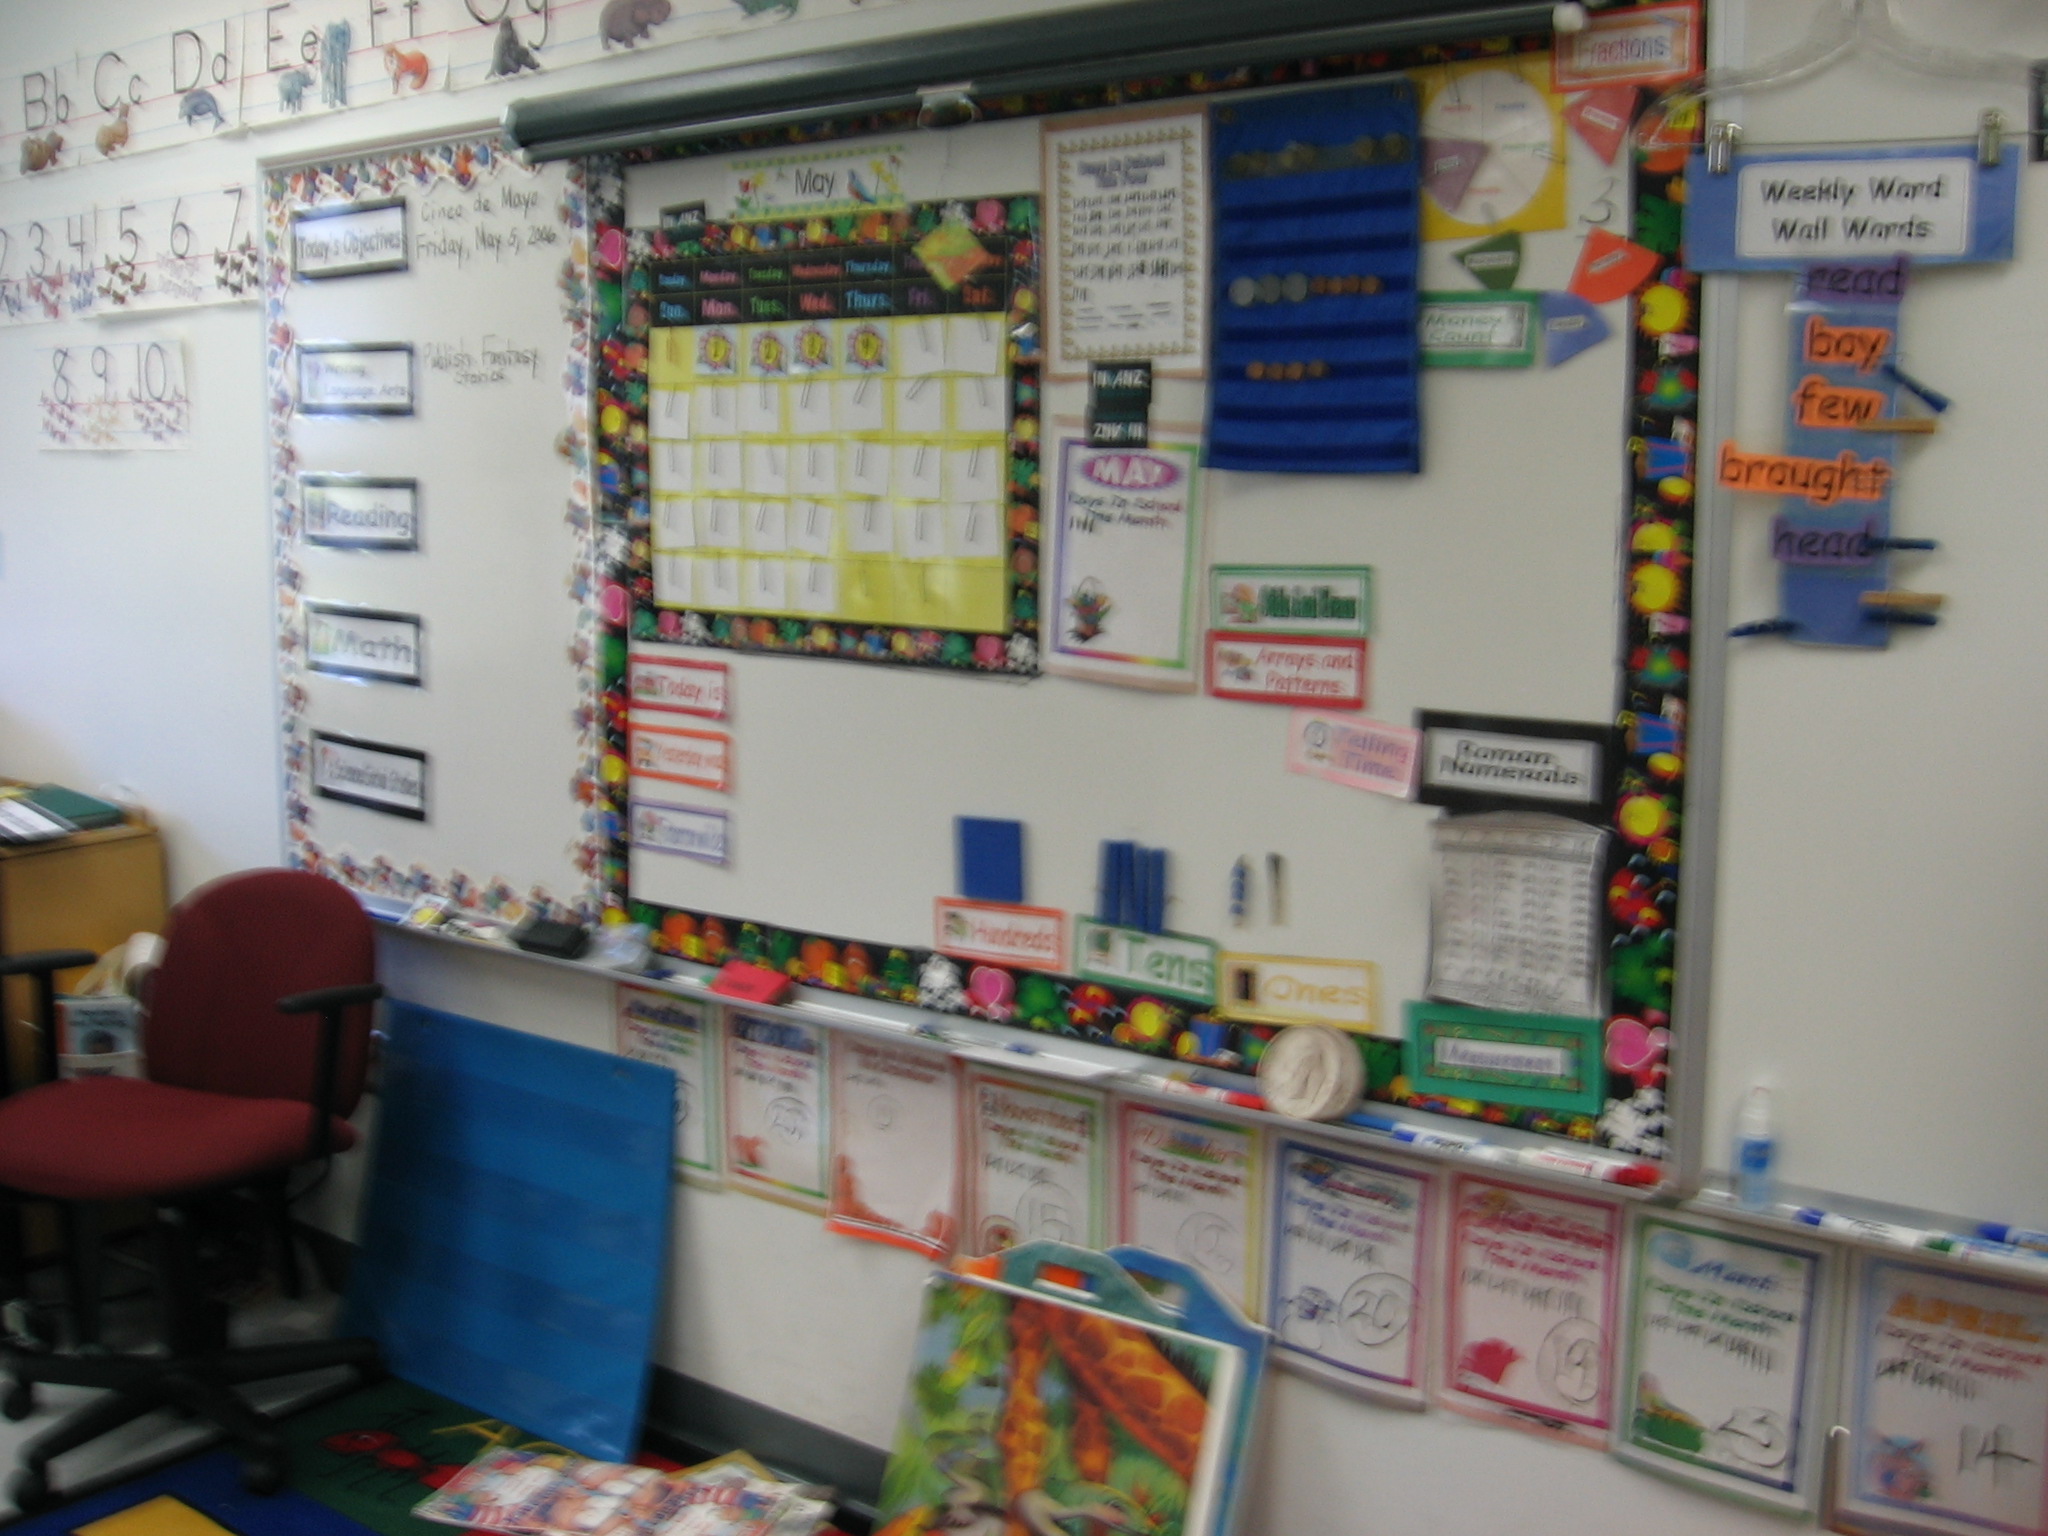 Ms. Witt, 1st Grade. An organized and attractive Calendar Math display.